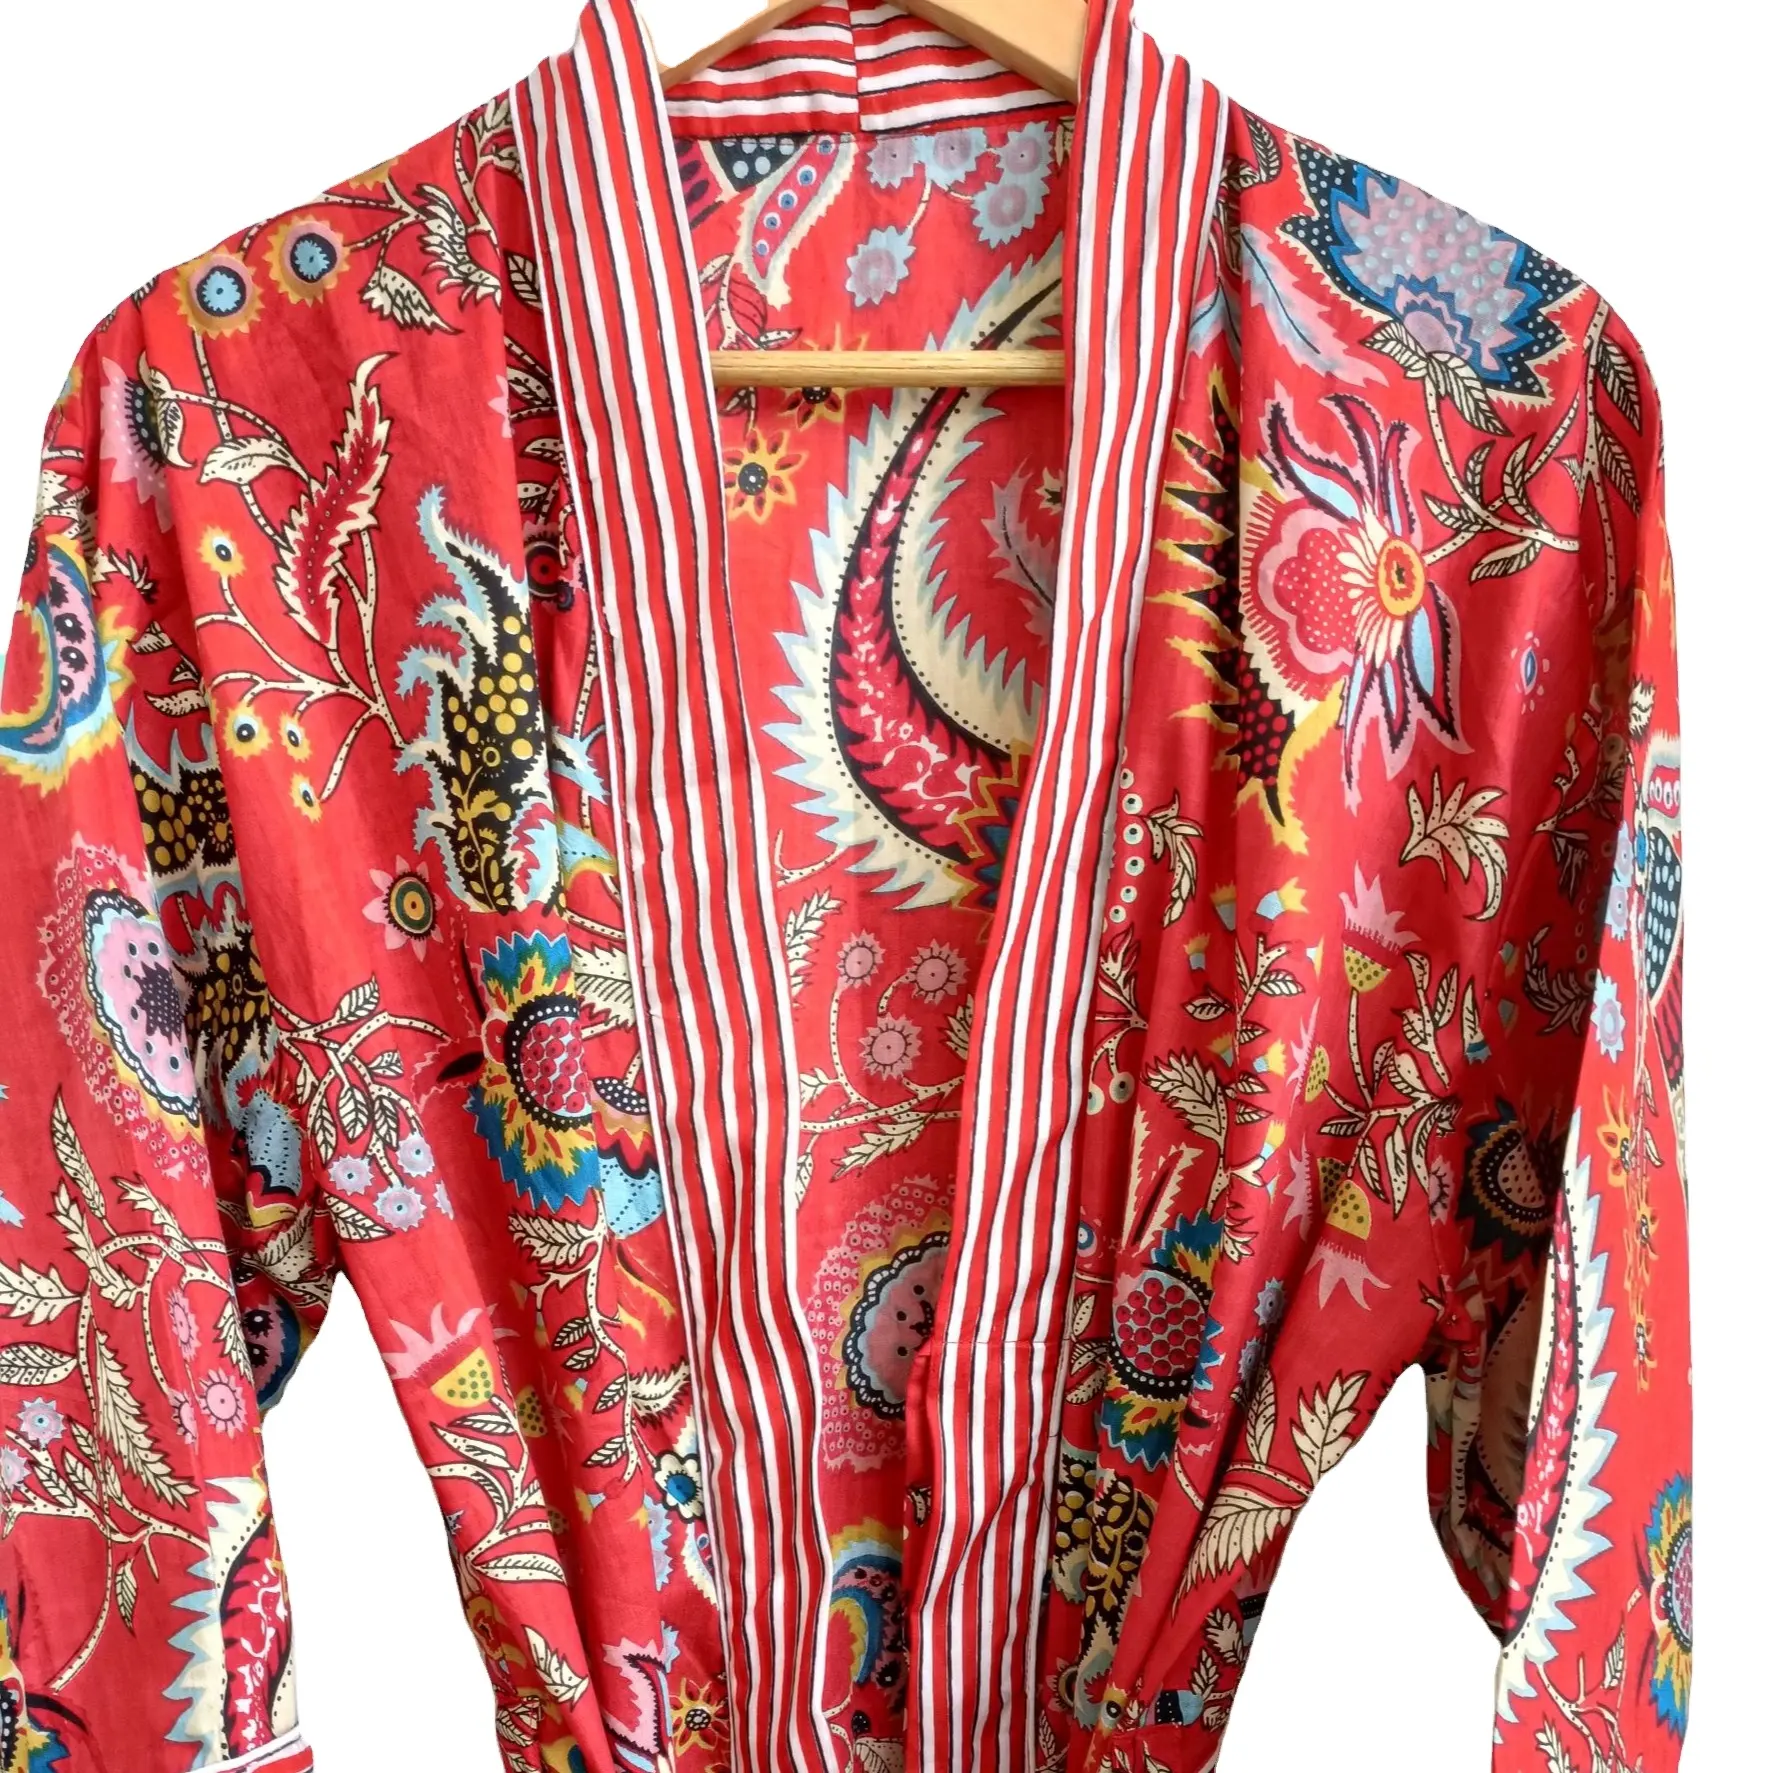 Exclusif Nouveau Design Floral Imprimé Rouge Indien Kimono Robe Longue Ceinturée Wrap Kimono Robe Robe pour Femmes